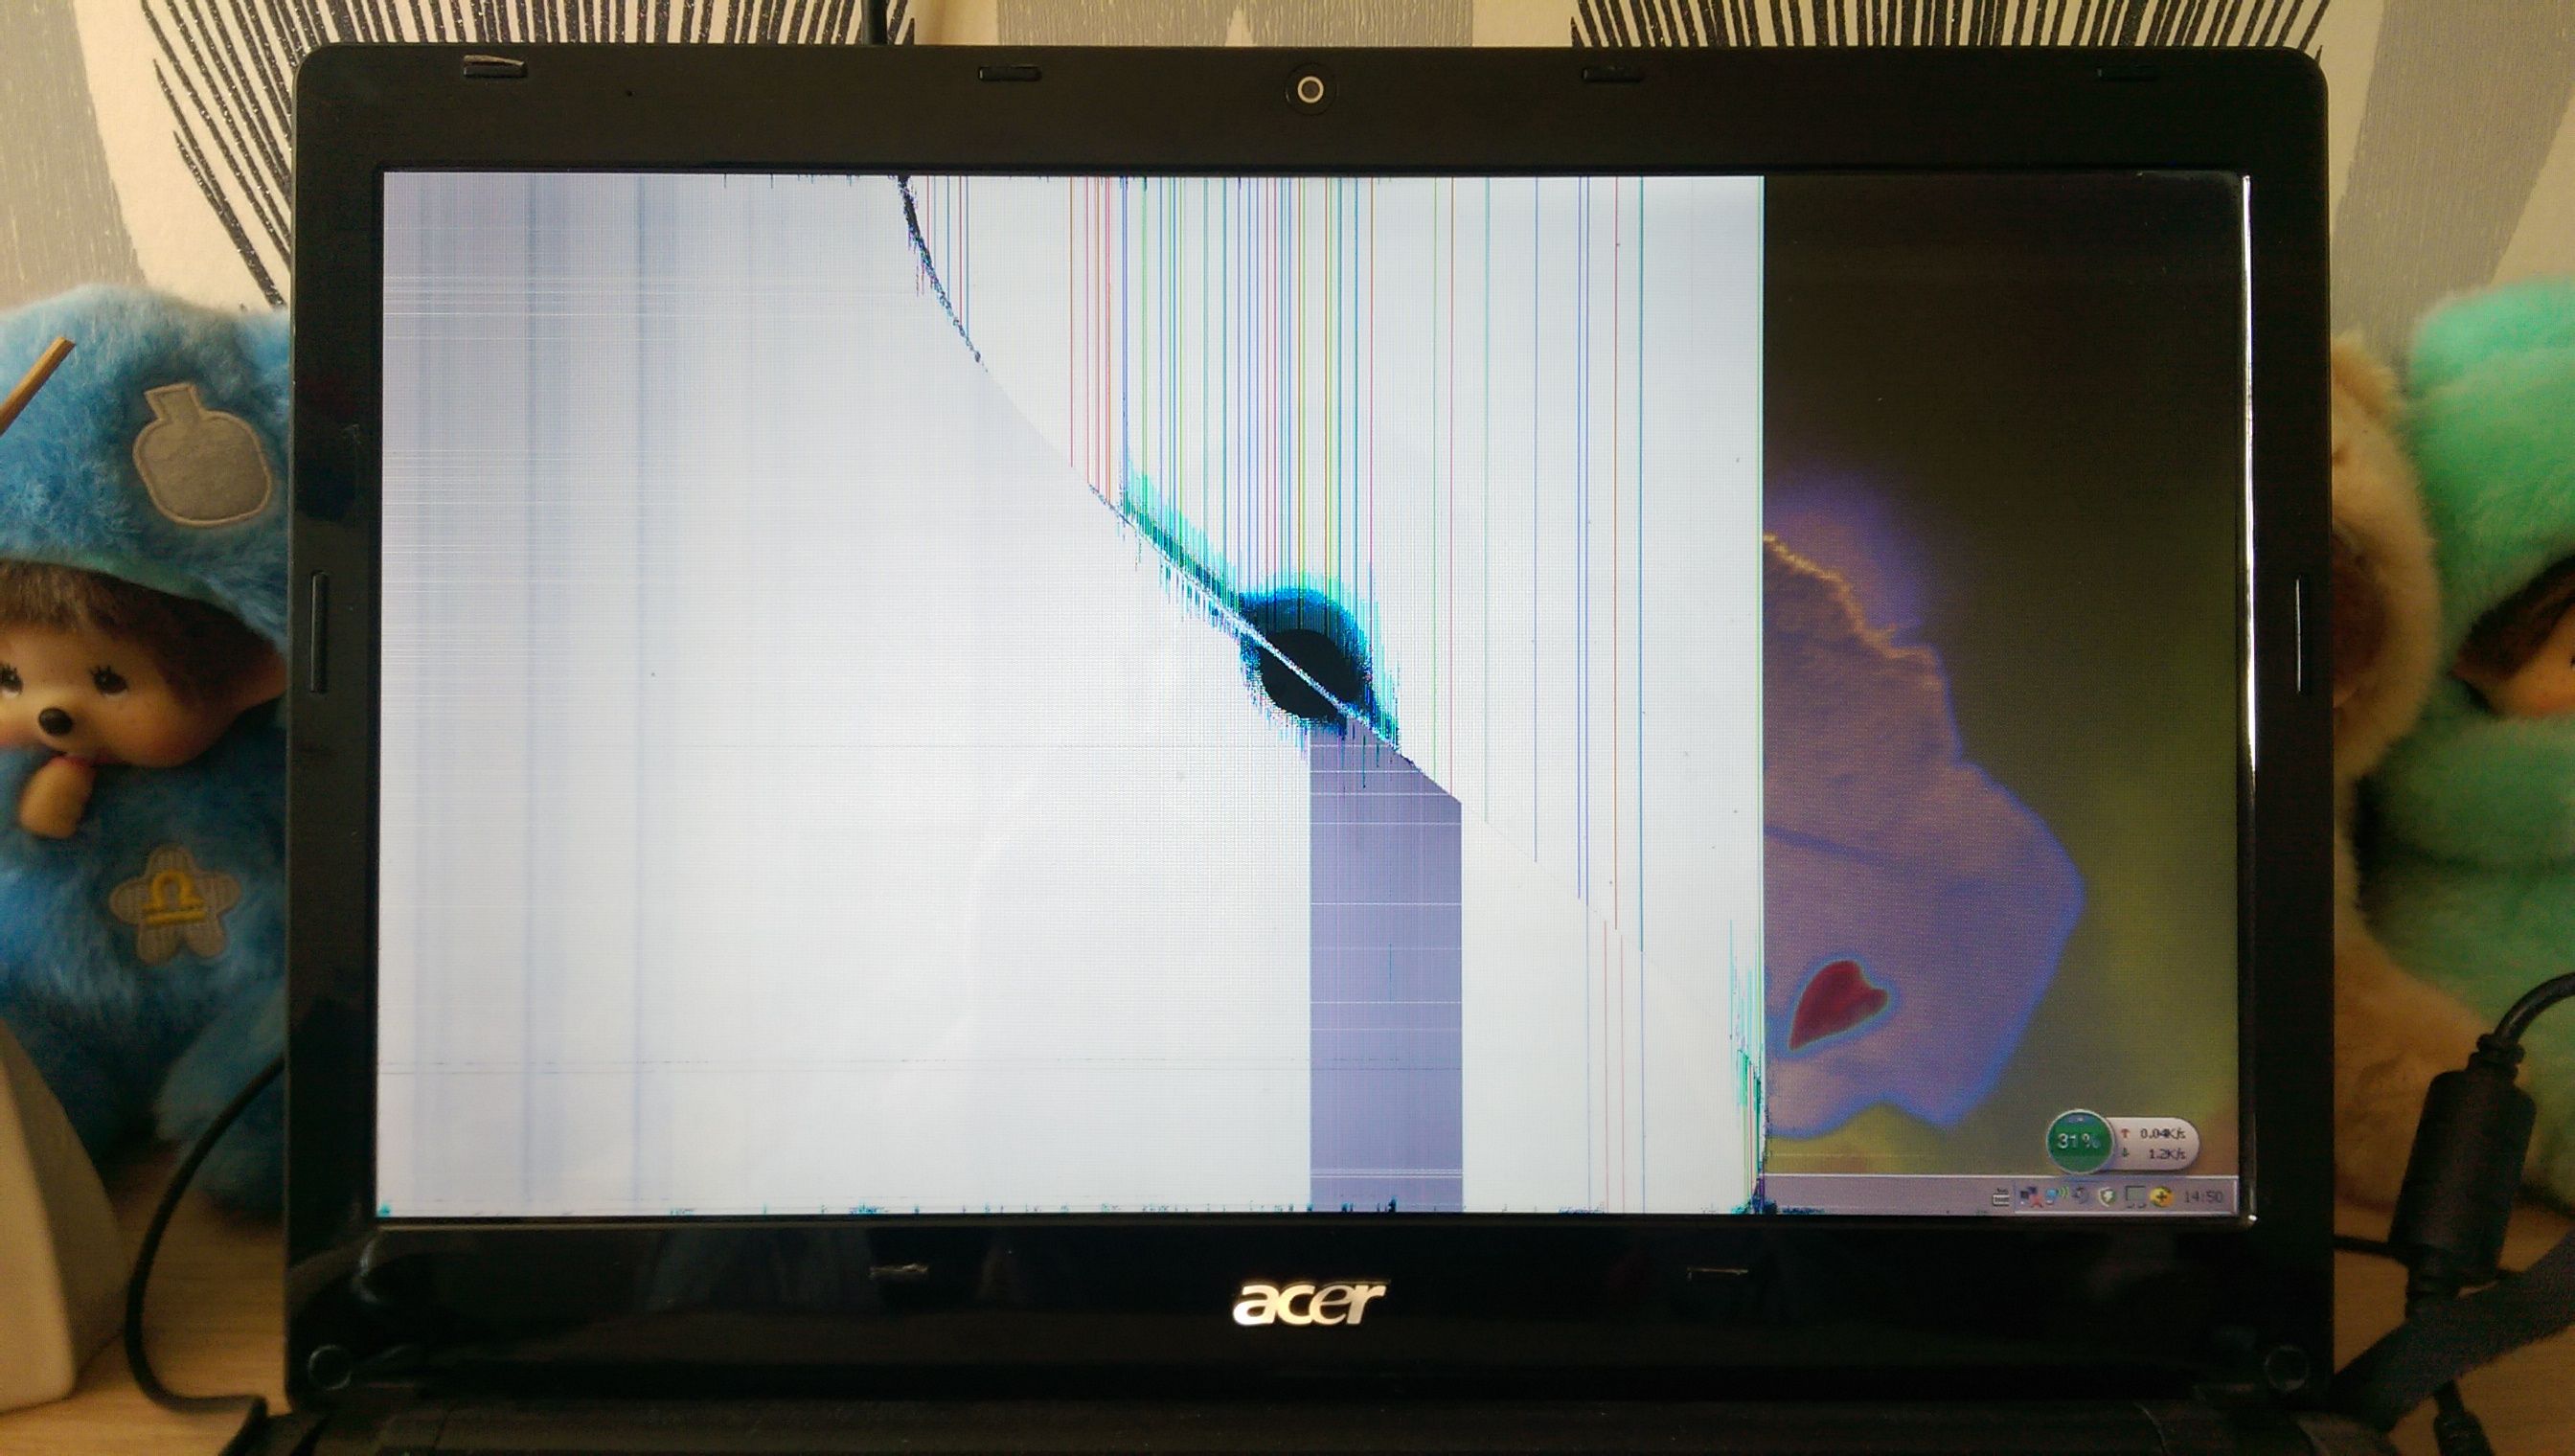 電腦屏幕上突然這樣是哪裏壞了嗎？